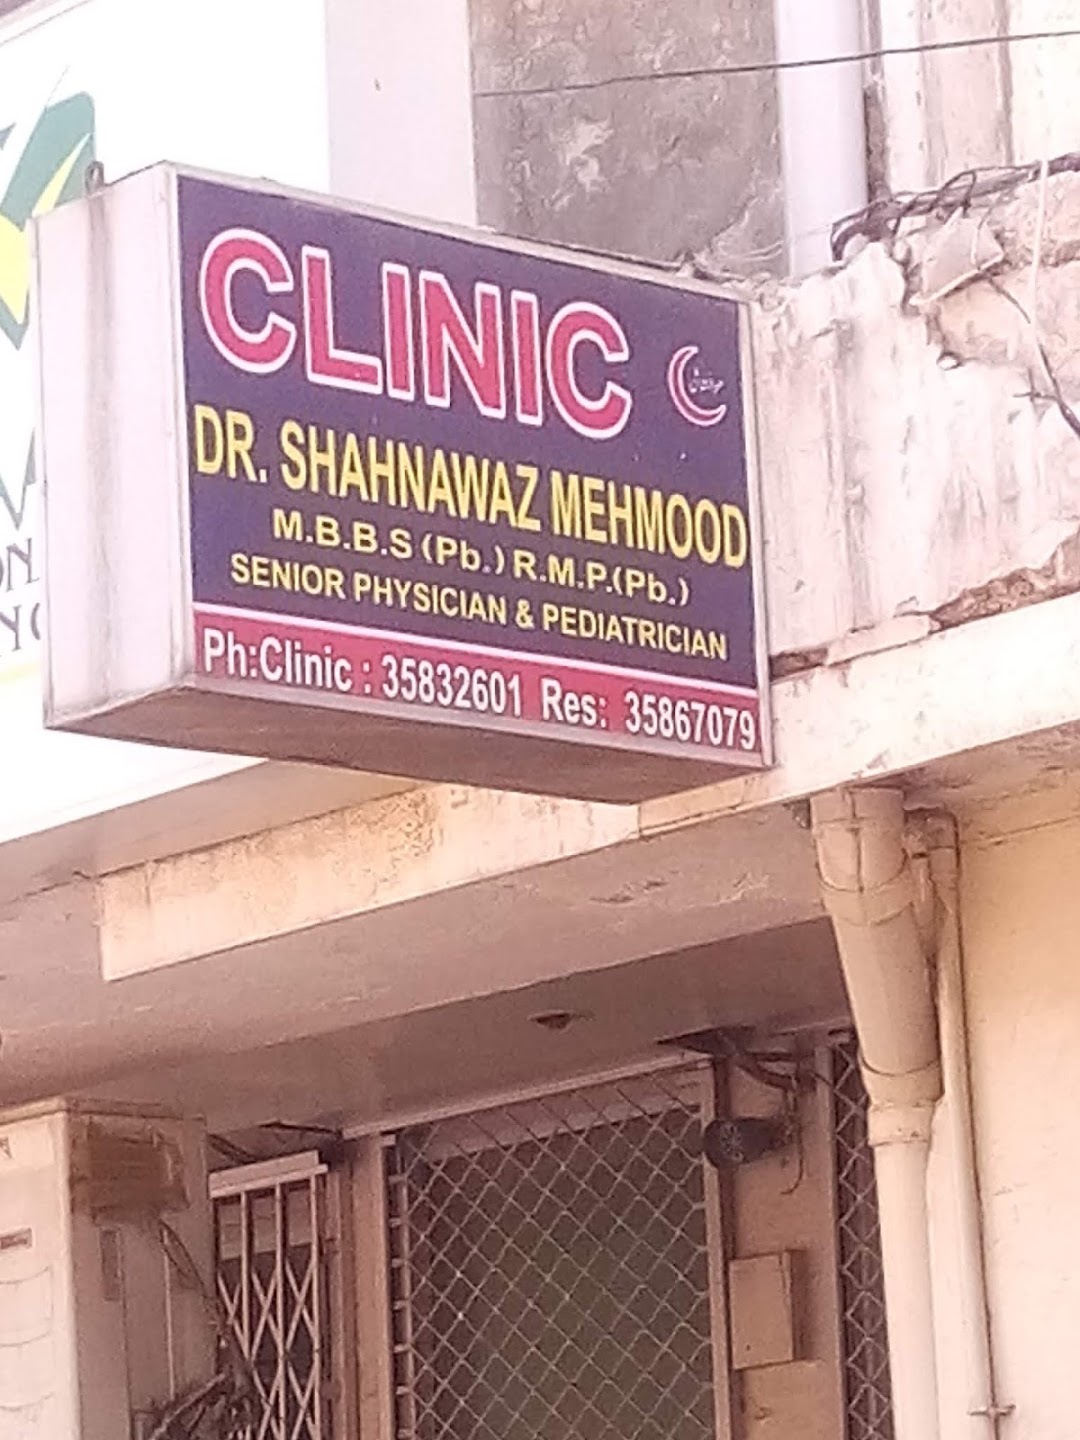 Dr. Shahnawaz Mehmood